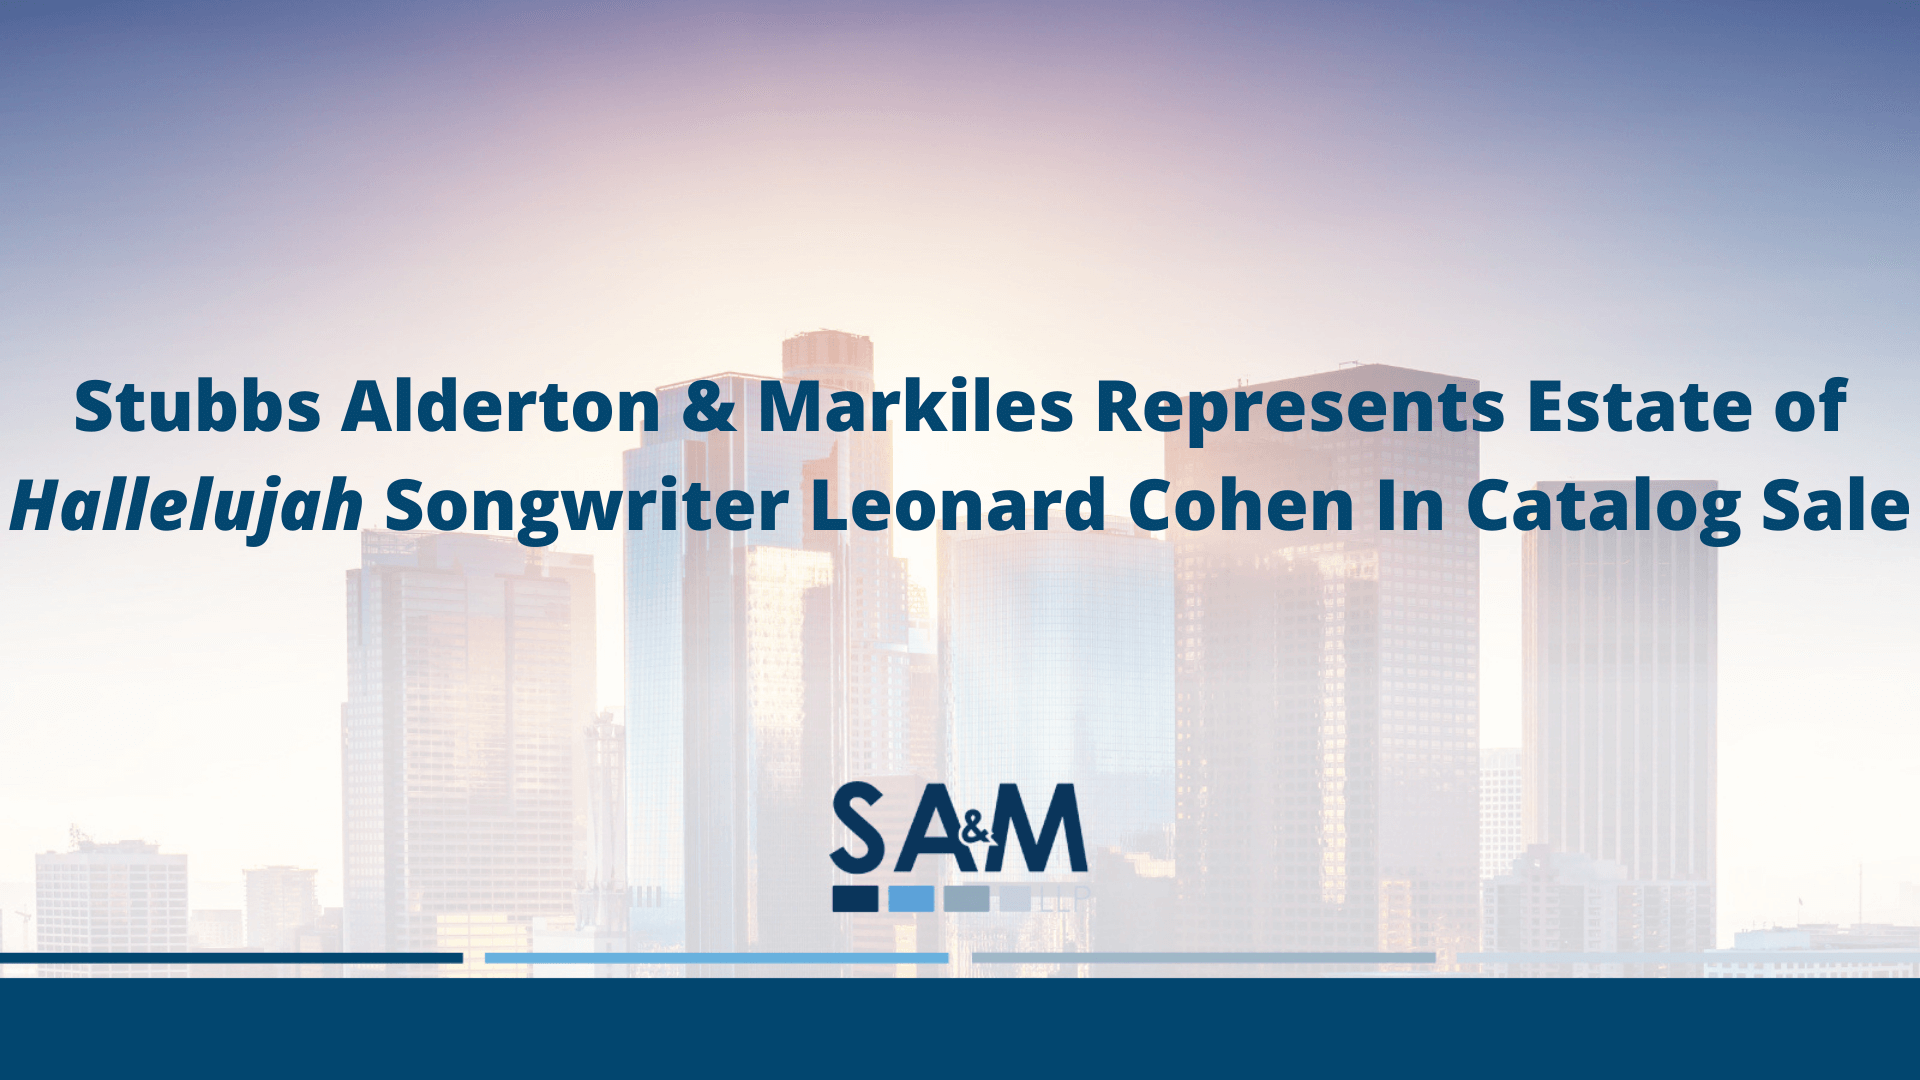 Stubbs Alderton & Markiles Represents Estate of Hallelujah Songwriter Leonard Cohen In Catalog Sale